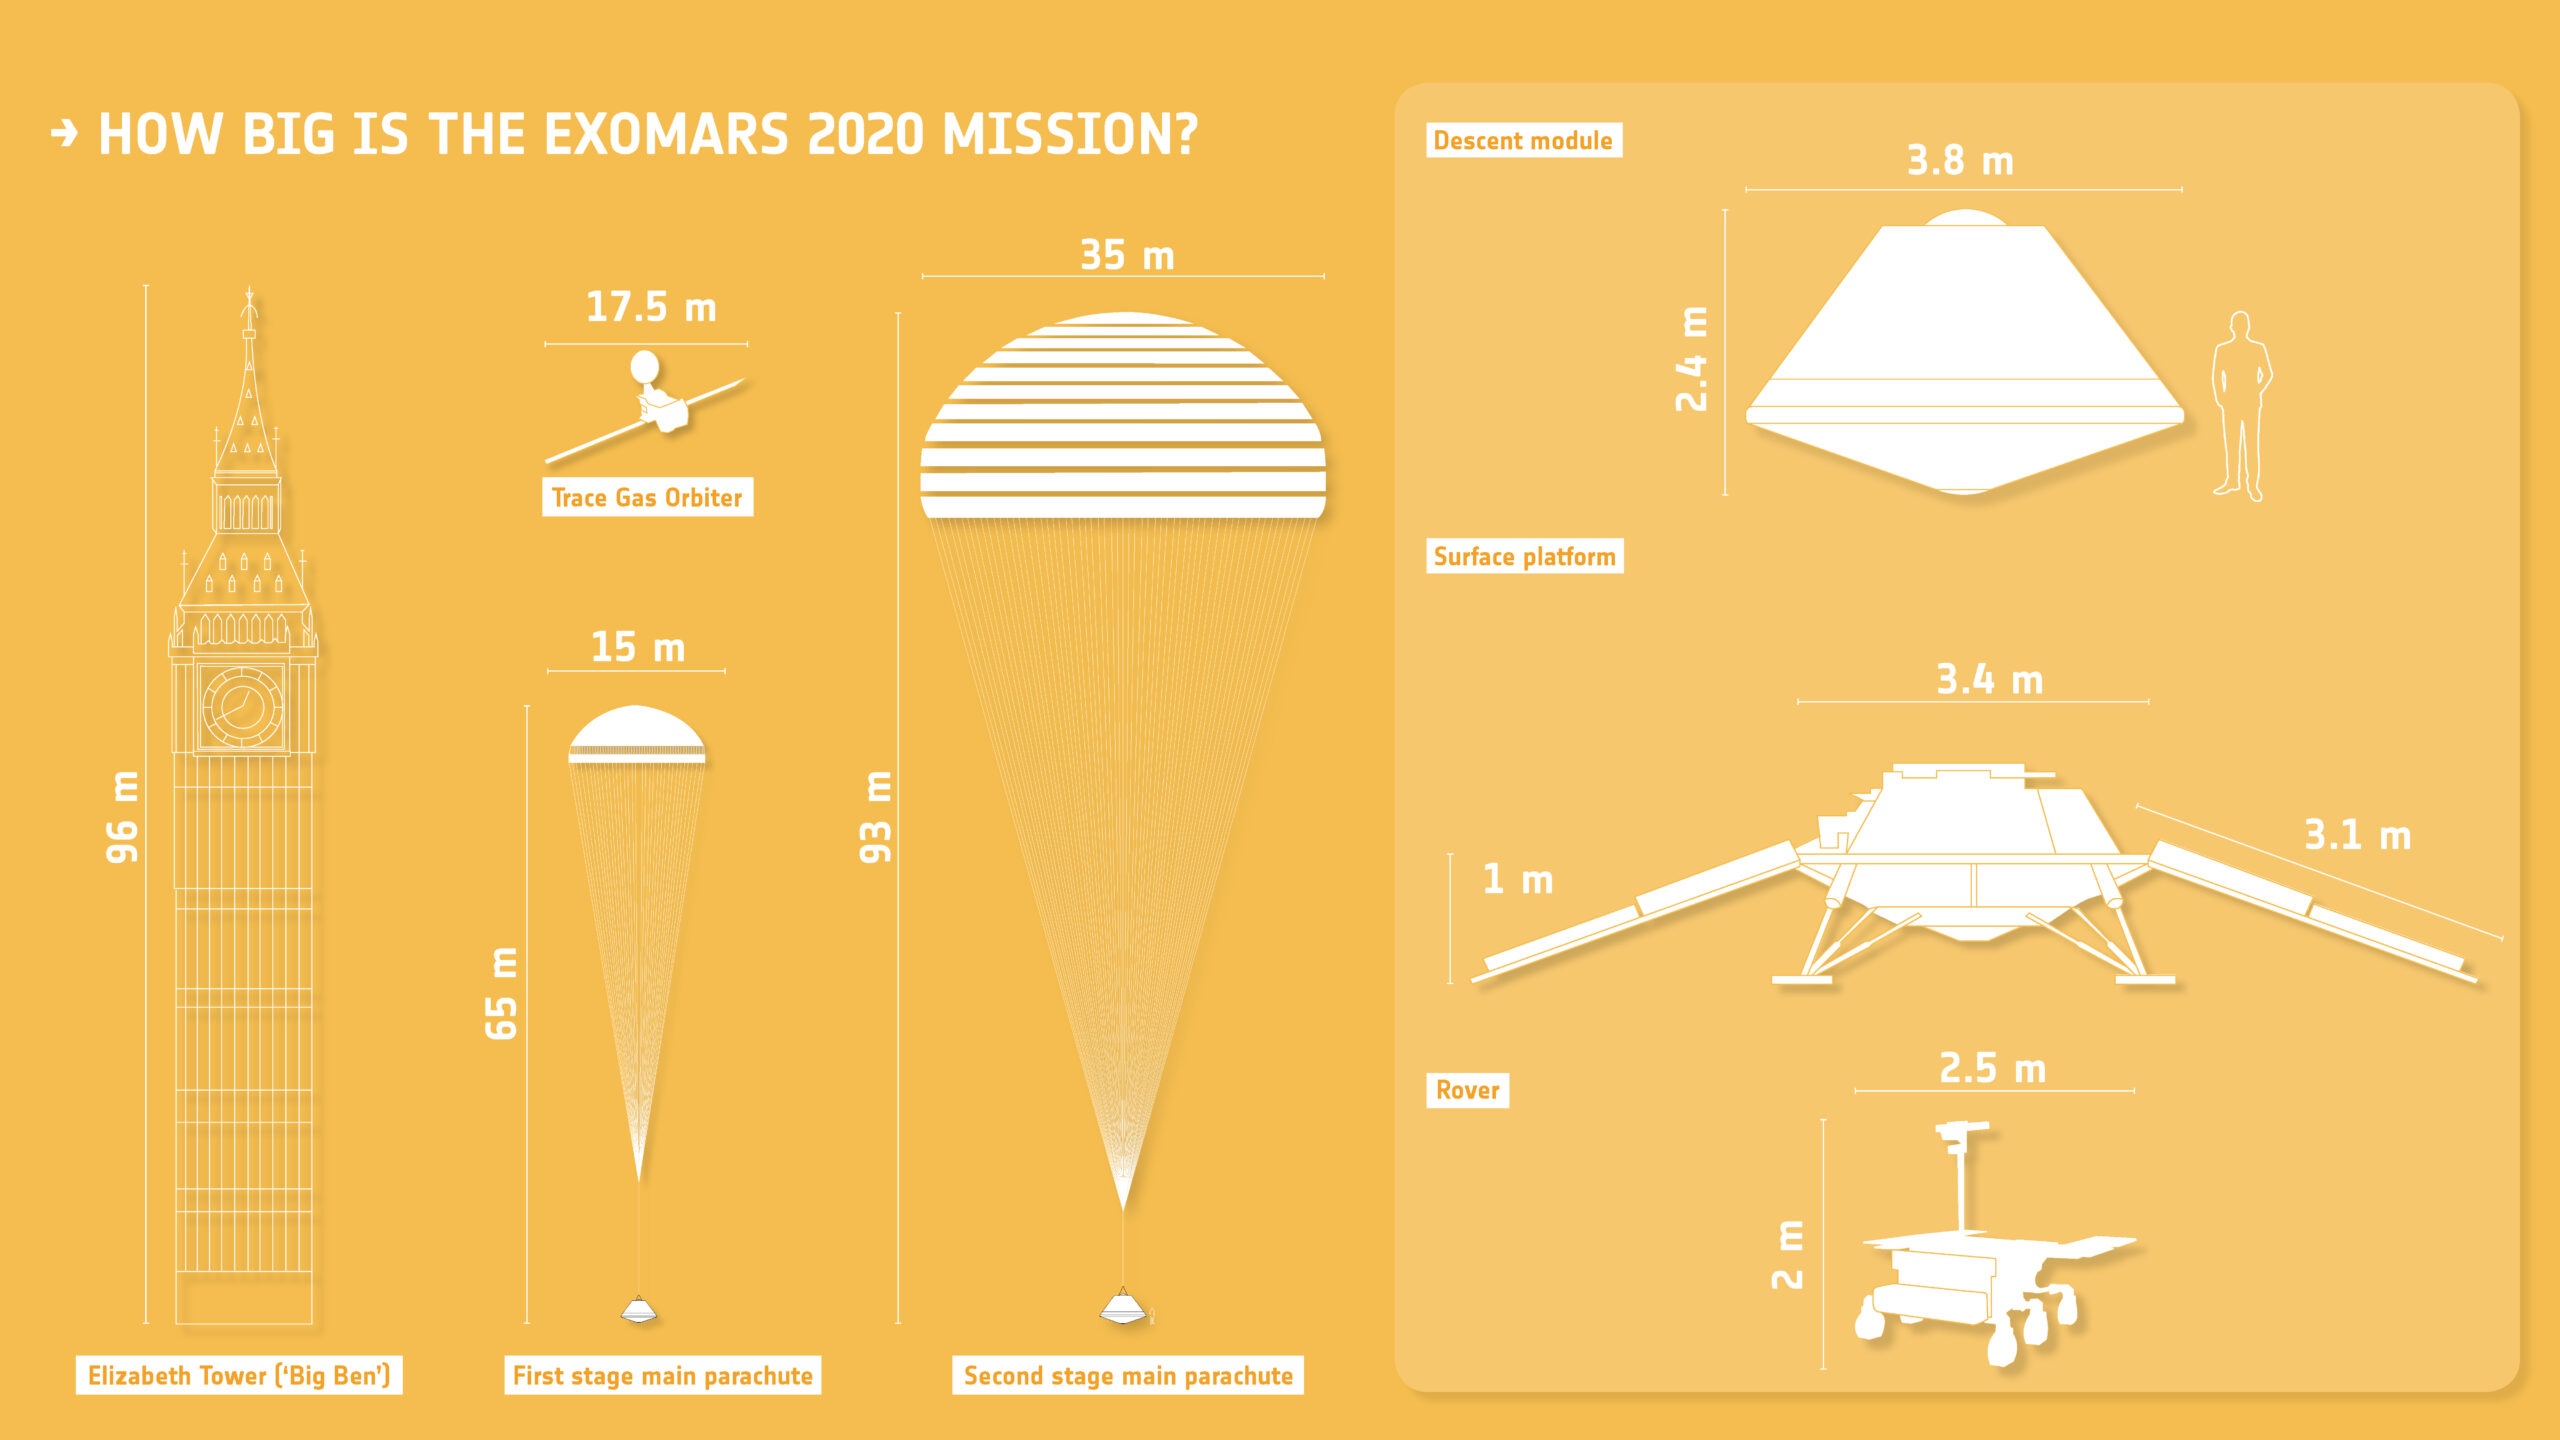 Schema dei vari componenti della missione ExoMArs 2020